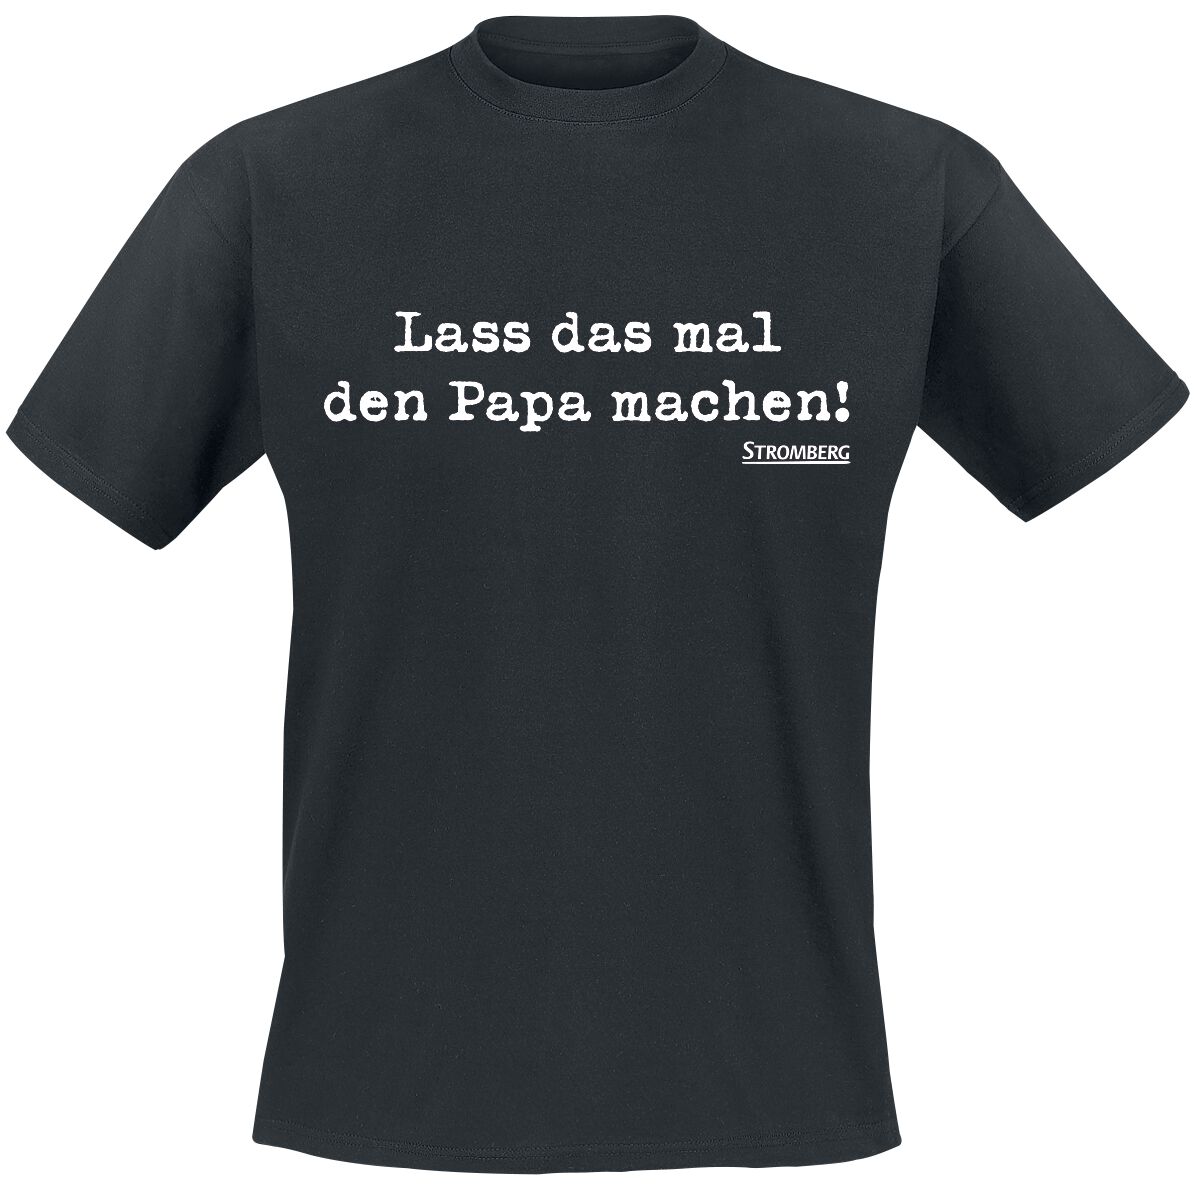 Stromberg T-Shirt - Lass das mal den Papa machen! - S bis 4XL - für Männer - Größe 3XL - schwarz